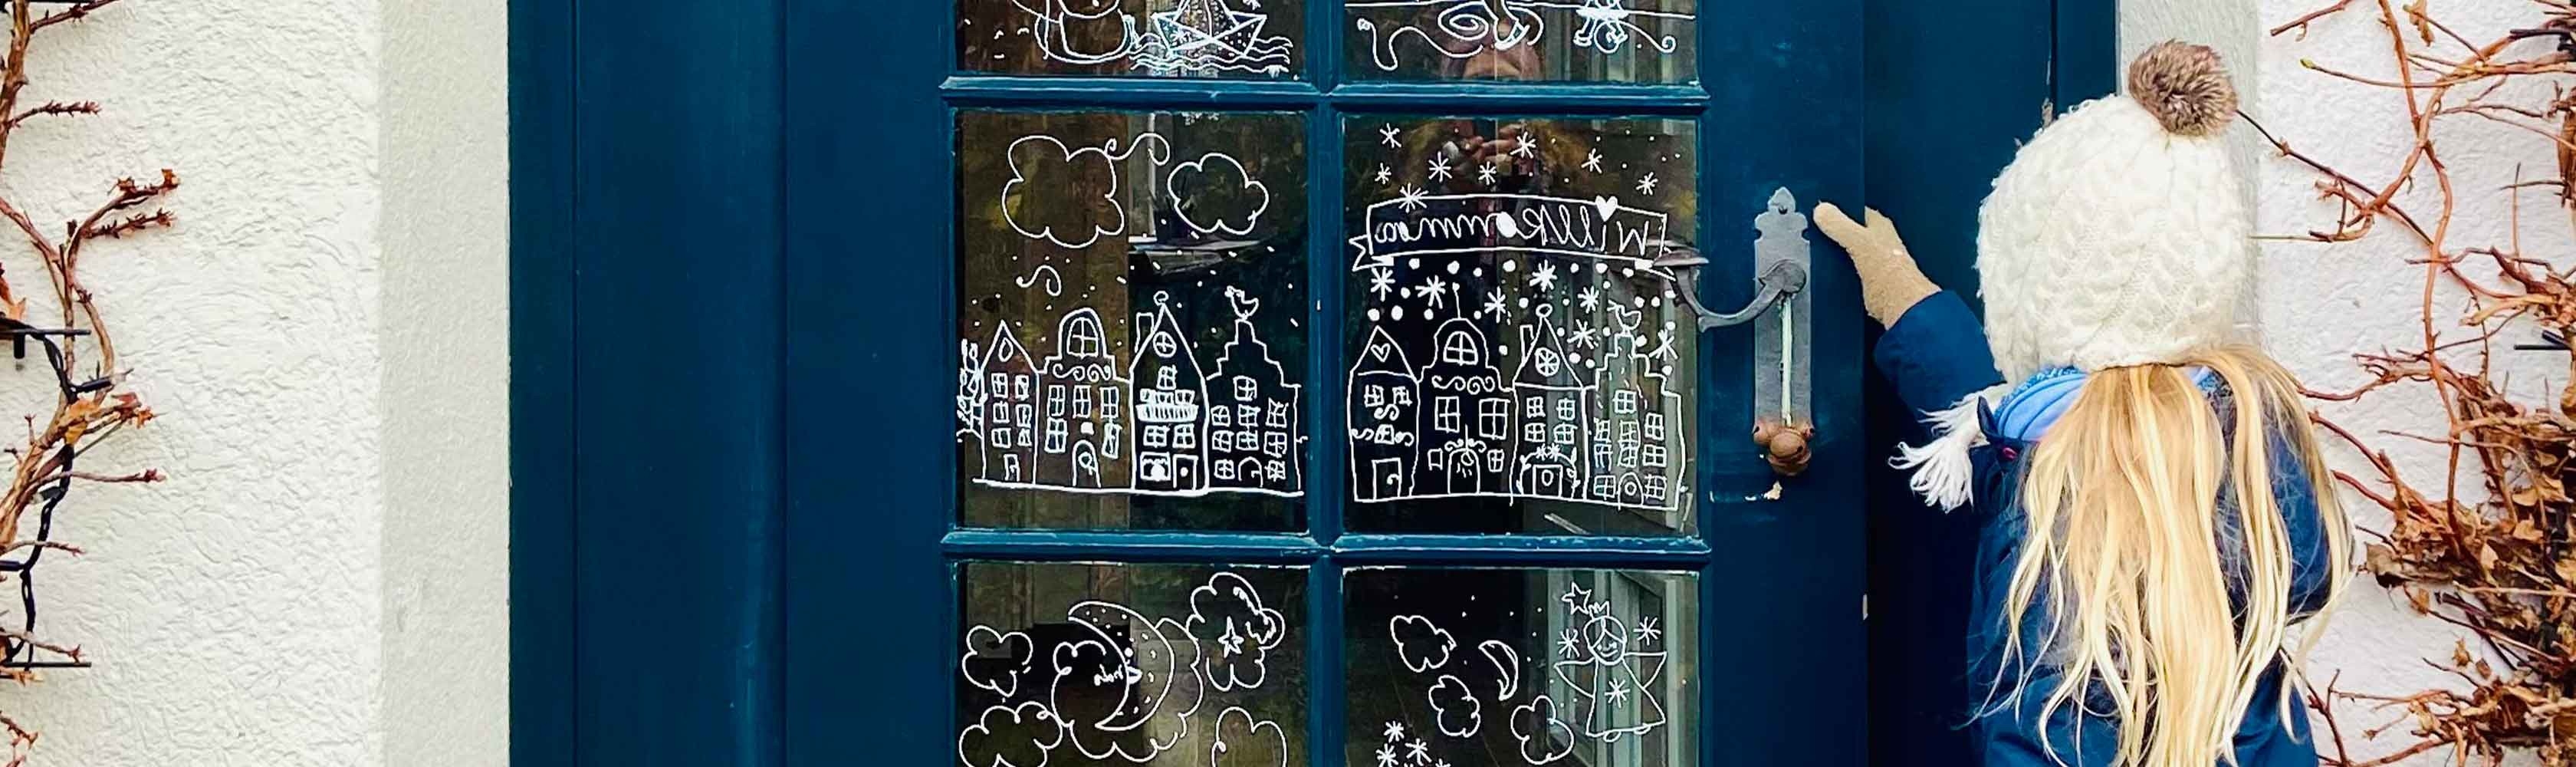 Soggetto invernale di Conci per decorare le finestre